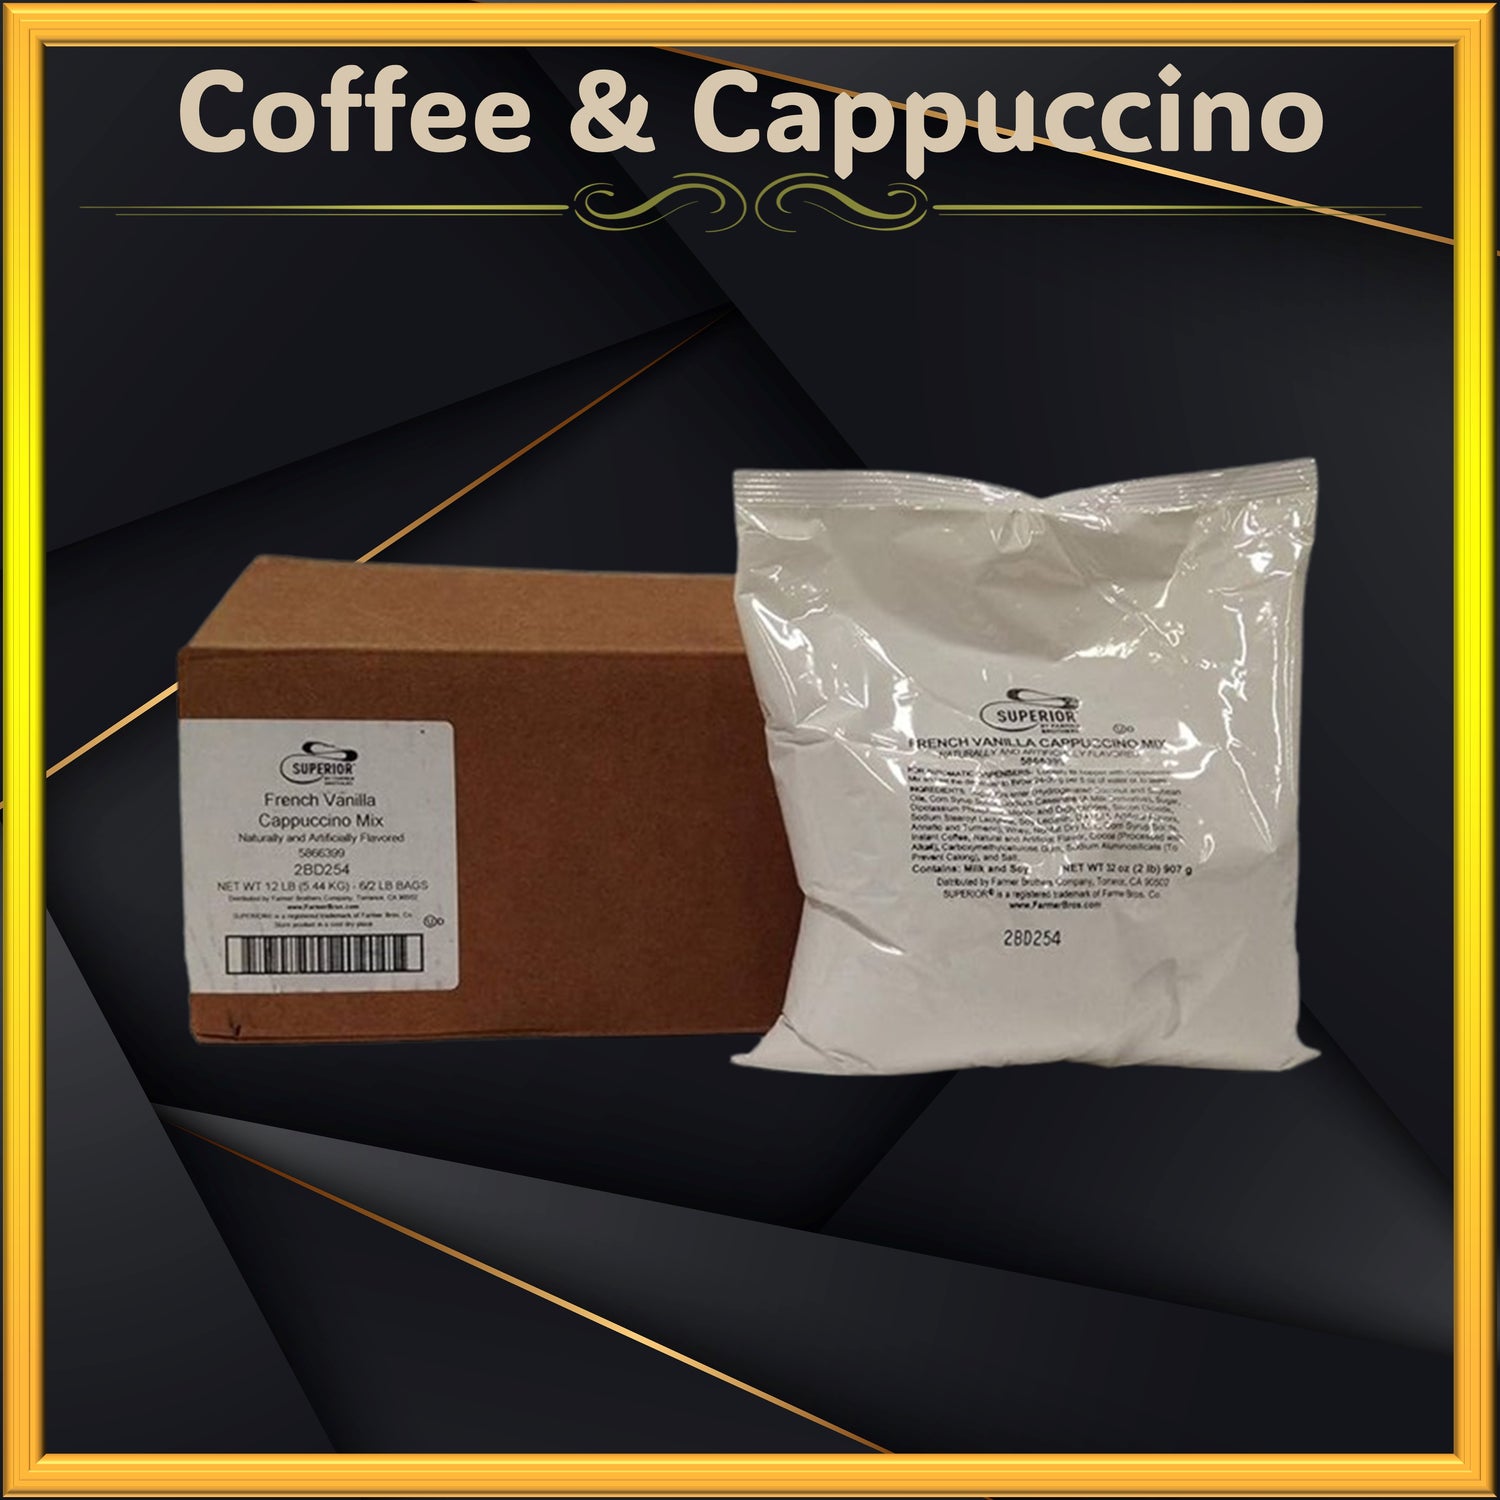 Coffee & Cappuccino